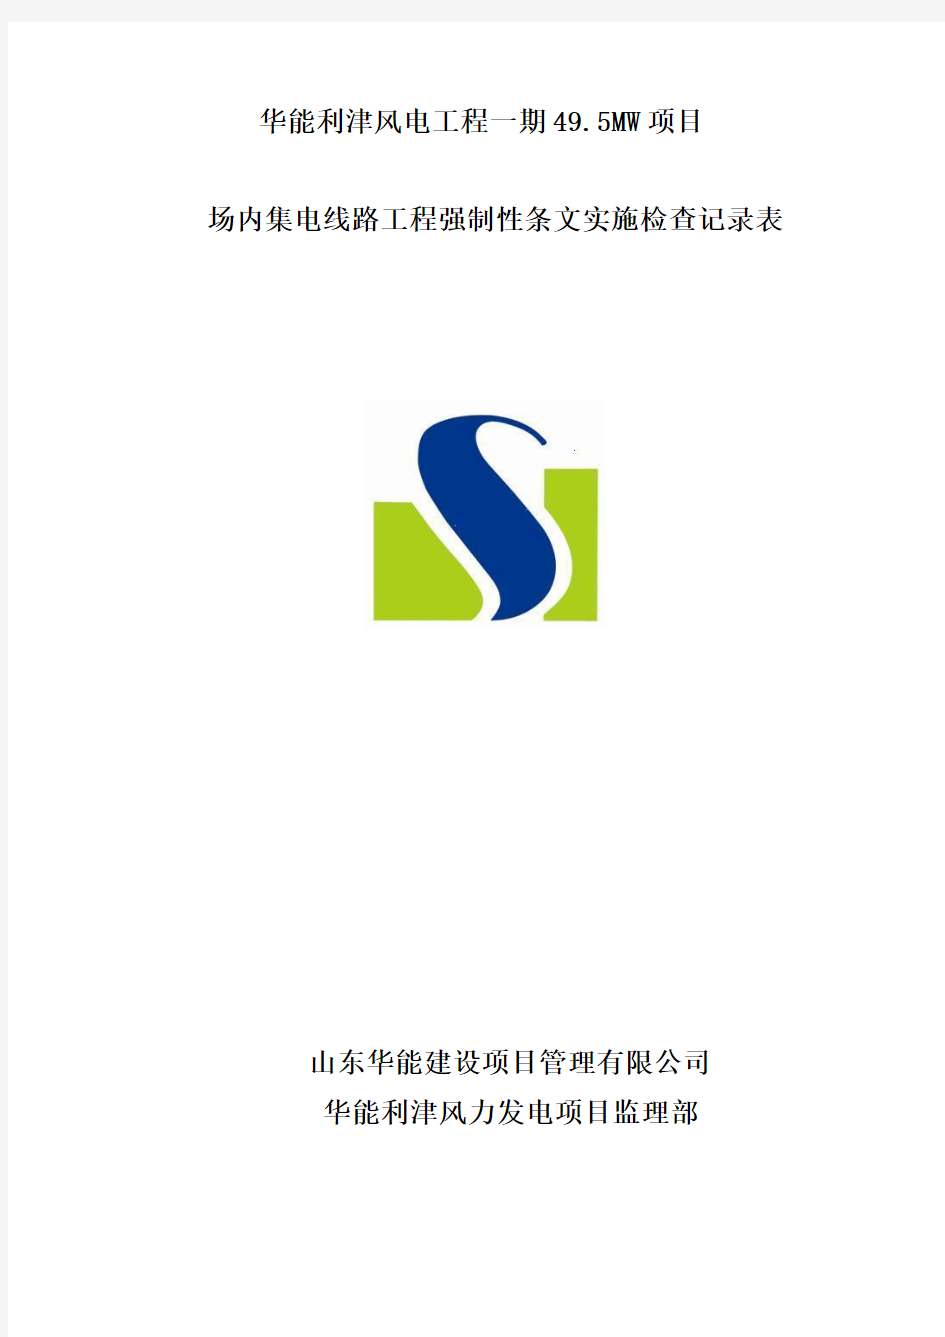 8 华能利津风电项目一期集电线路工程强制性条文实施检查记录表